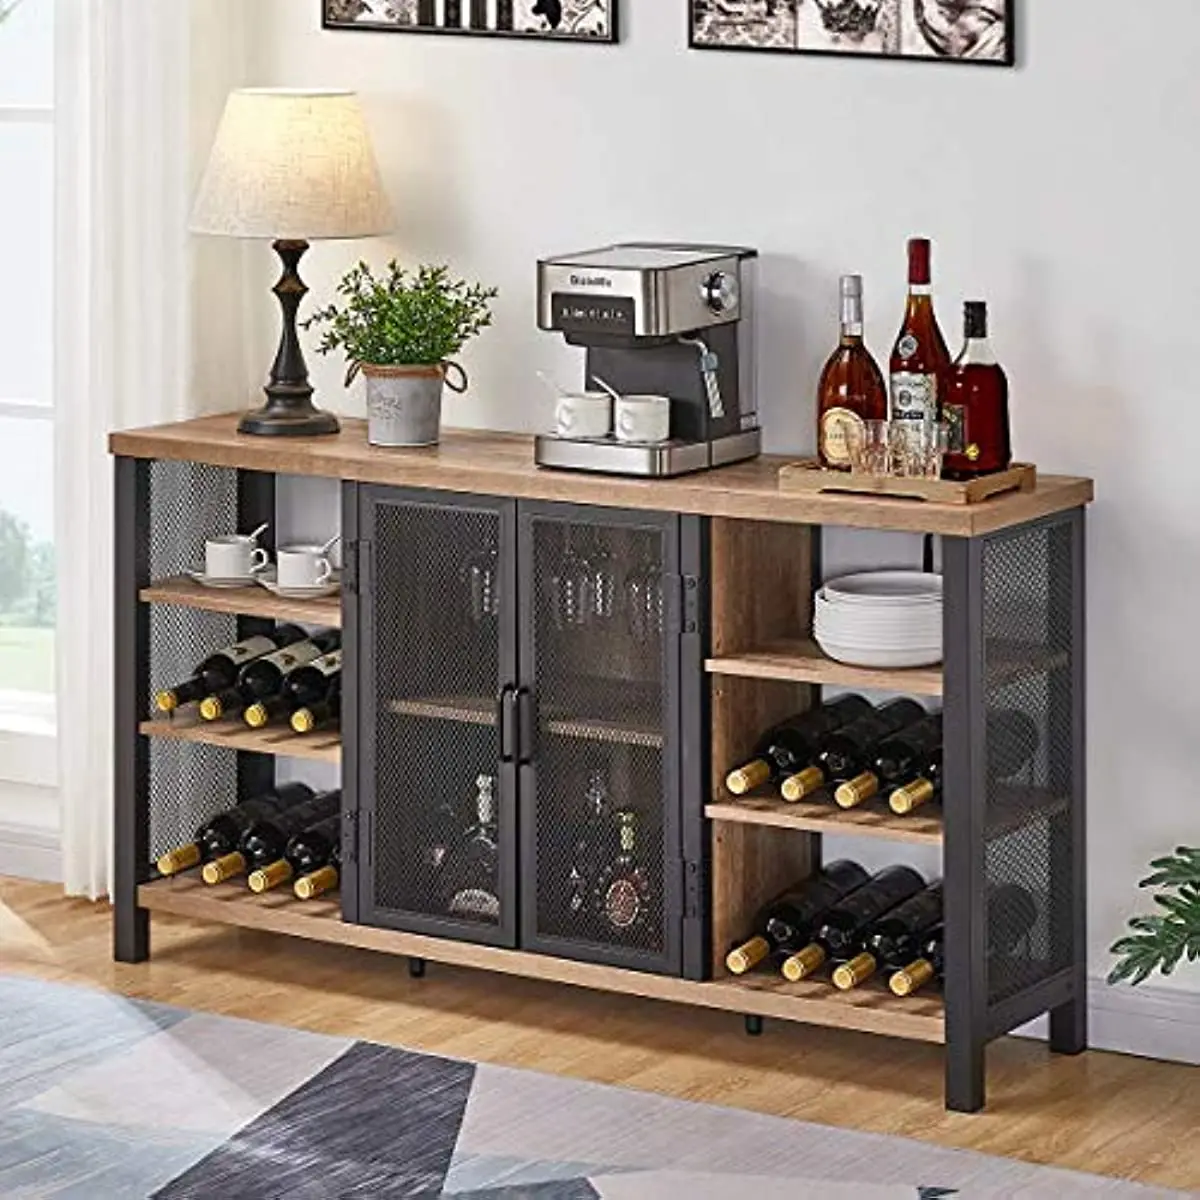 

Промышленный винный шкаф для ликера и бокалов, Деревянный кофейный шкаф для фермерского дома с винной стойкой, металлический буфет